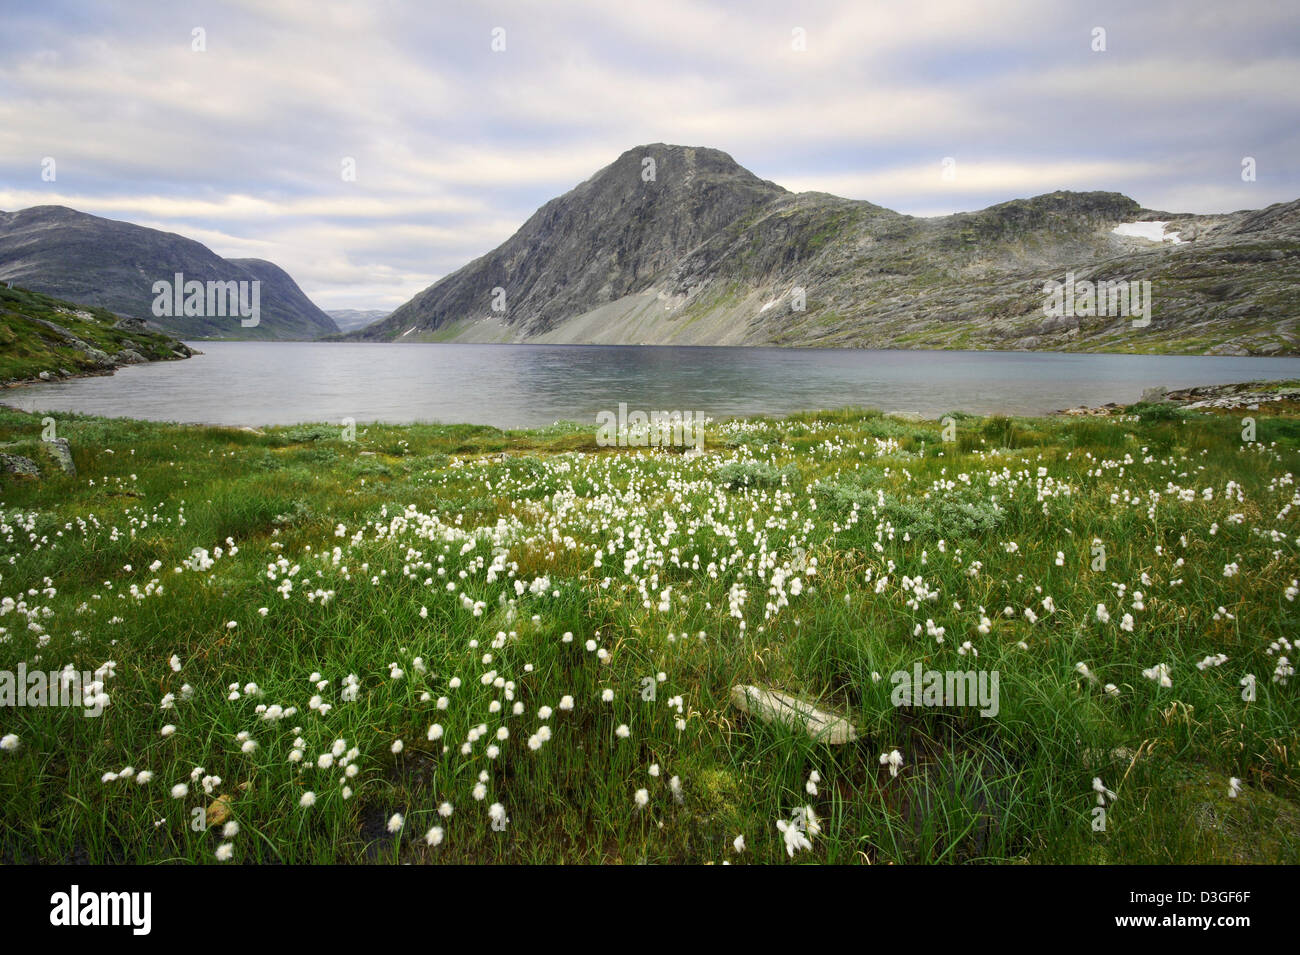 Paysage scandinave - petite herbe de coton sur les rives d'un lac glaciaire dans les montagnes. Banque D'Images